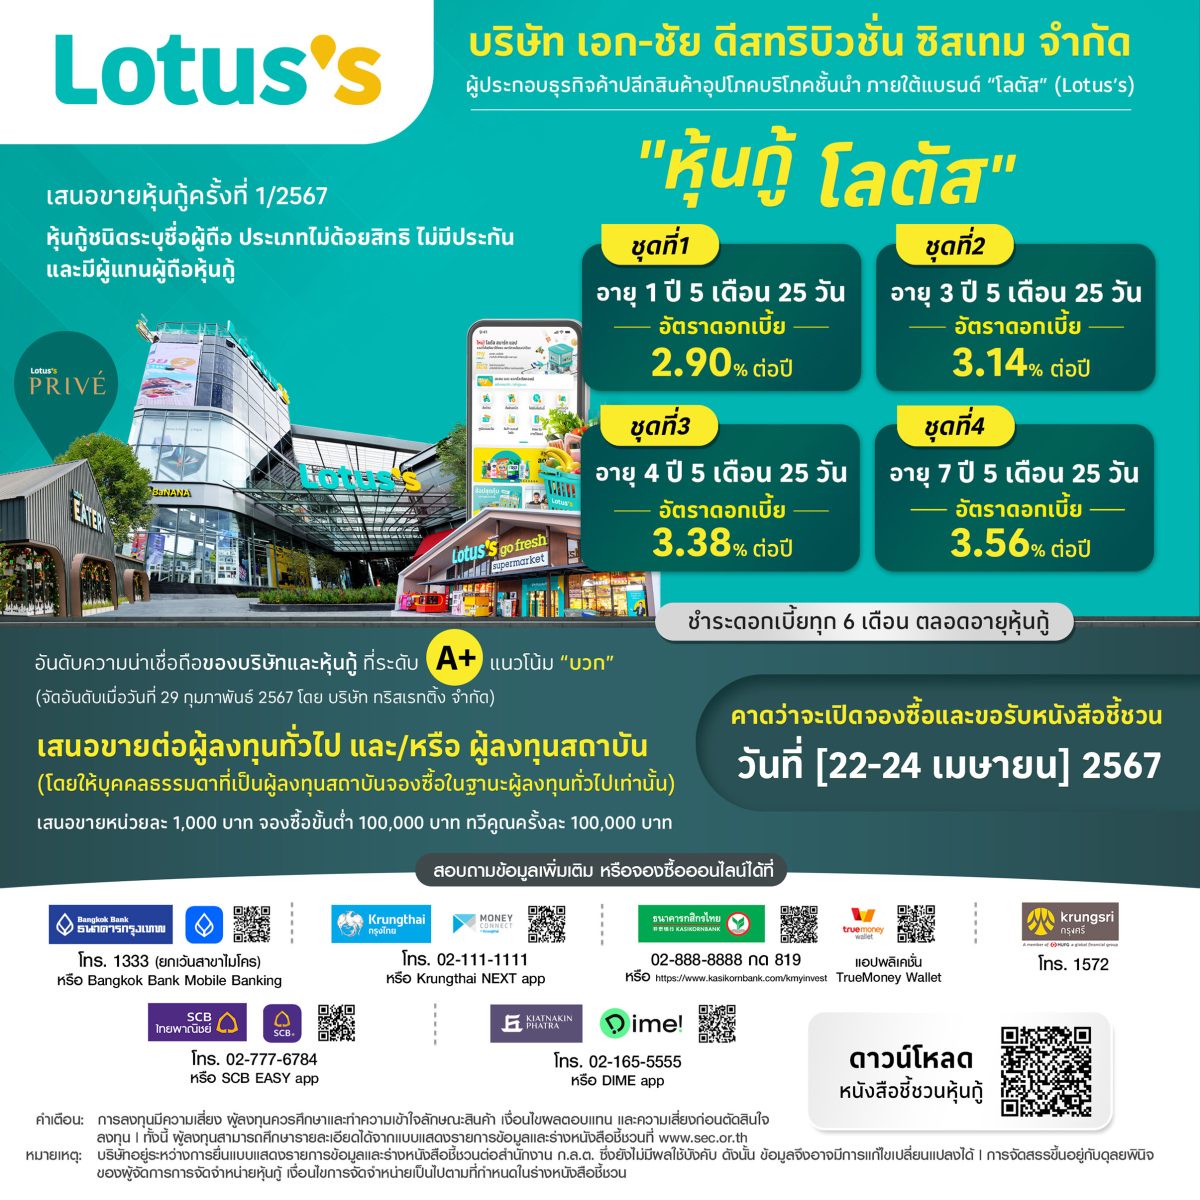 โลตัส (Lotus's) เคาะอัตราดอกเบี้ยหุ้นกู้ 4 ชุด อัตรา 2.90-3.56% ต่อปี เปิดโอกาสประชาชนทั่วไปจองซื้อ 22-24 เมษายน